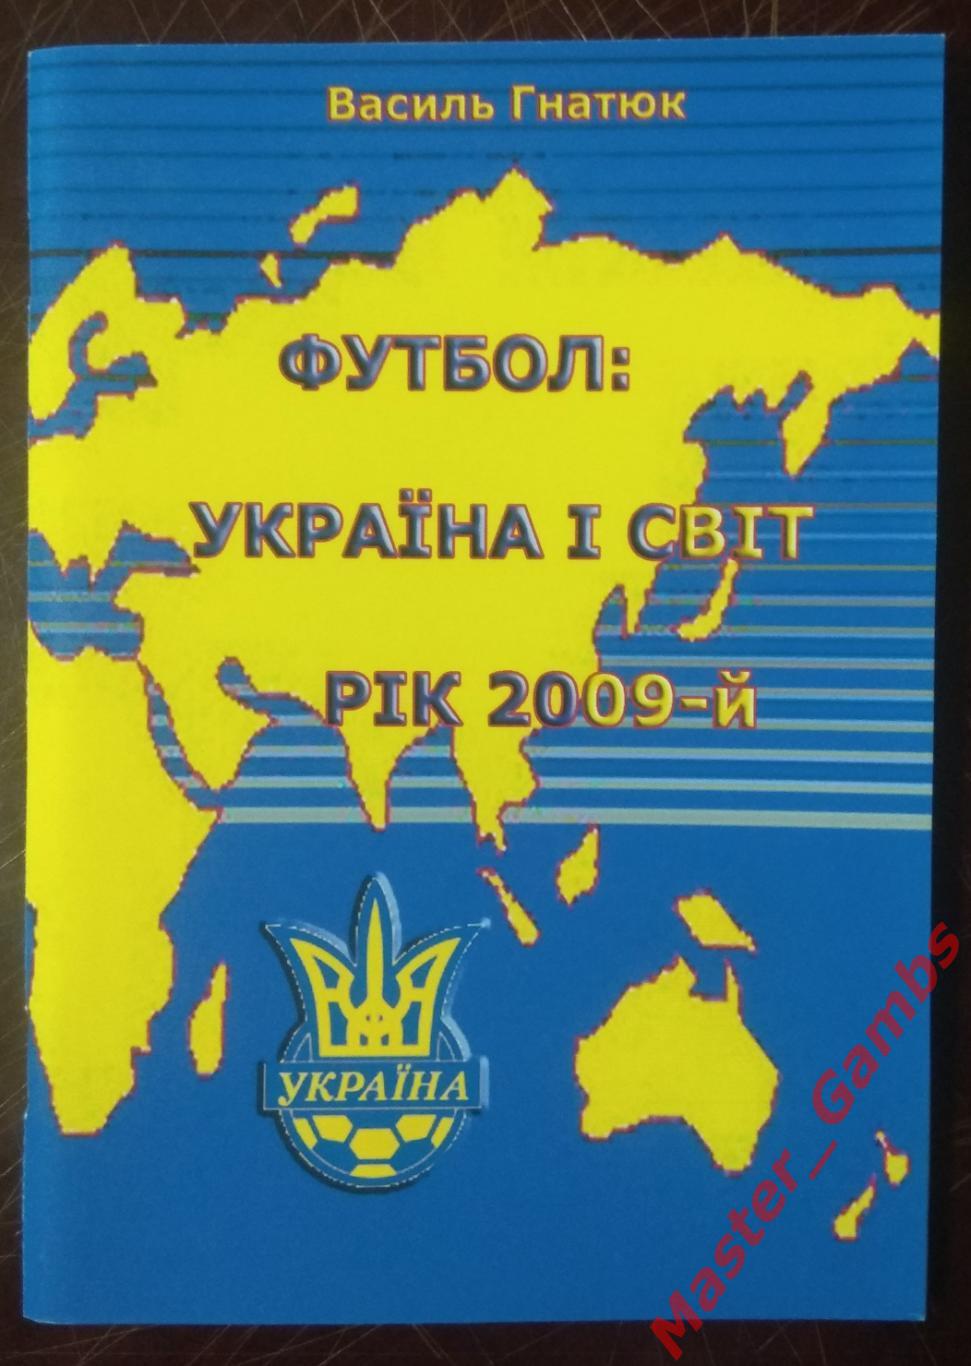 Гнатюк - Украина и мир (Україна і світ) #12 2009